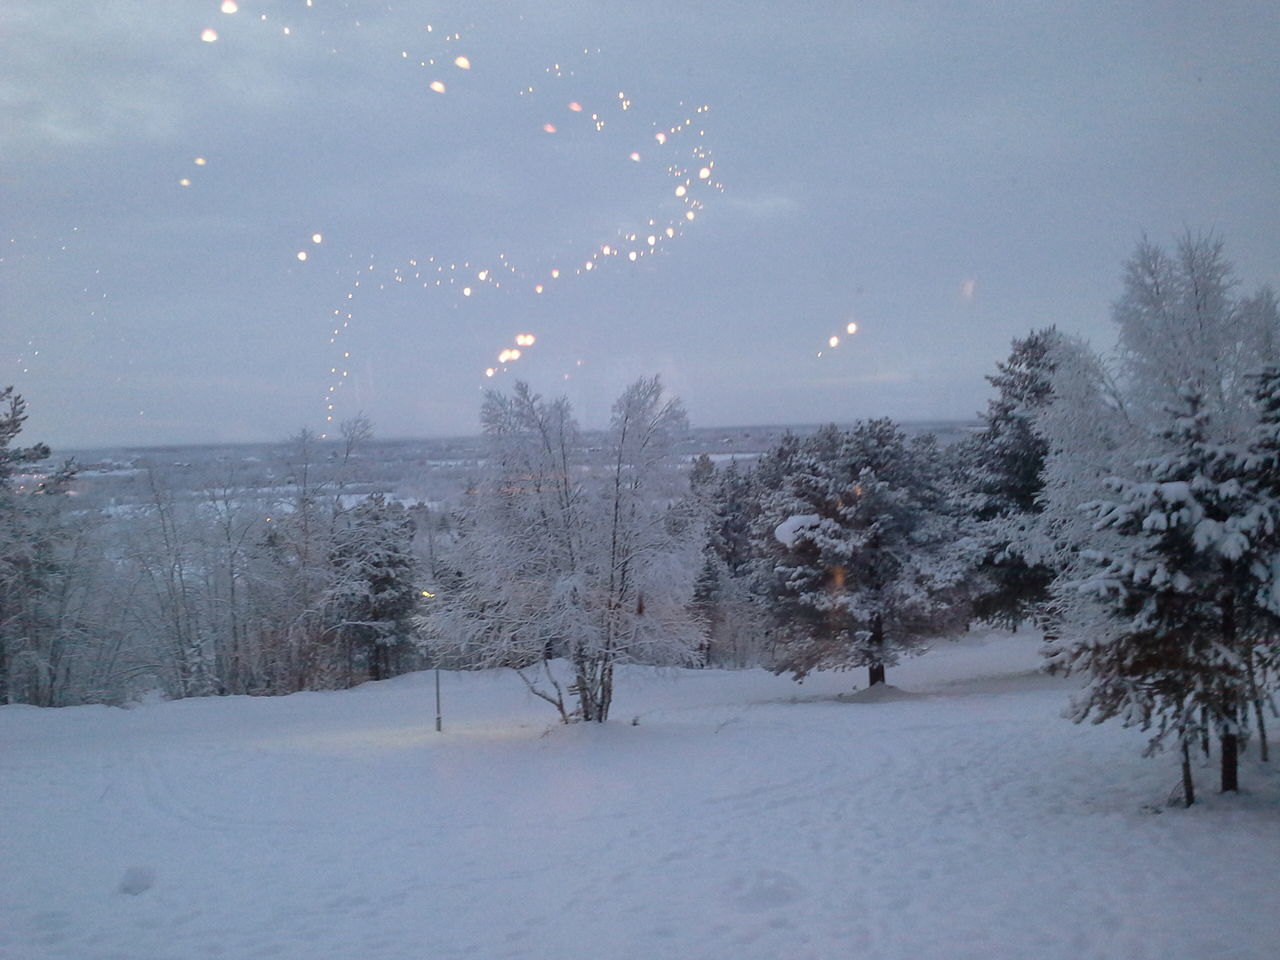 Snowy Sweden